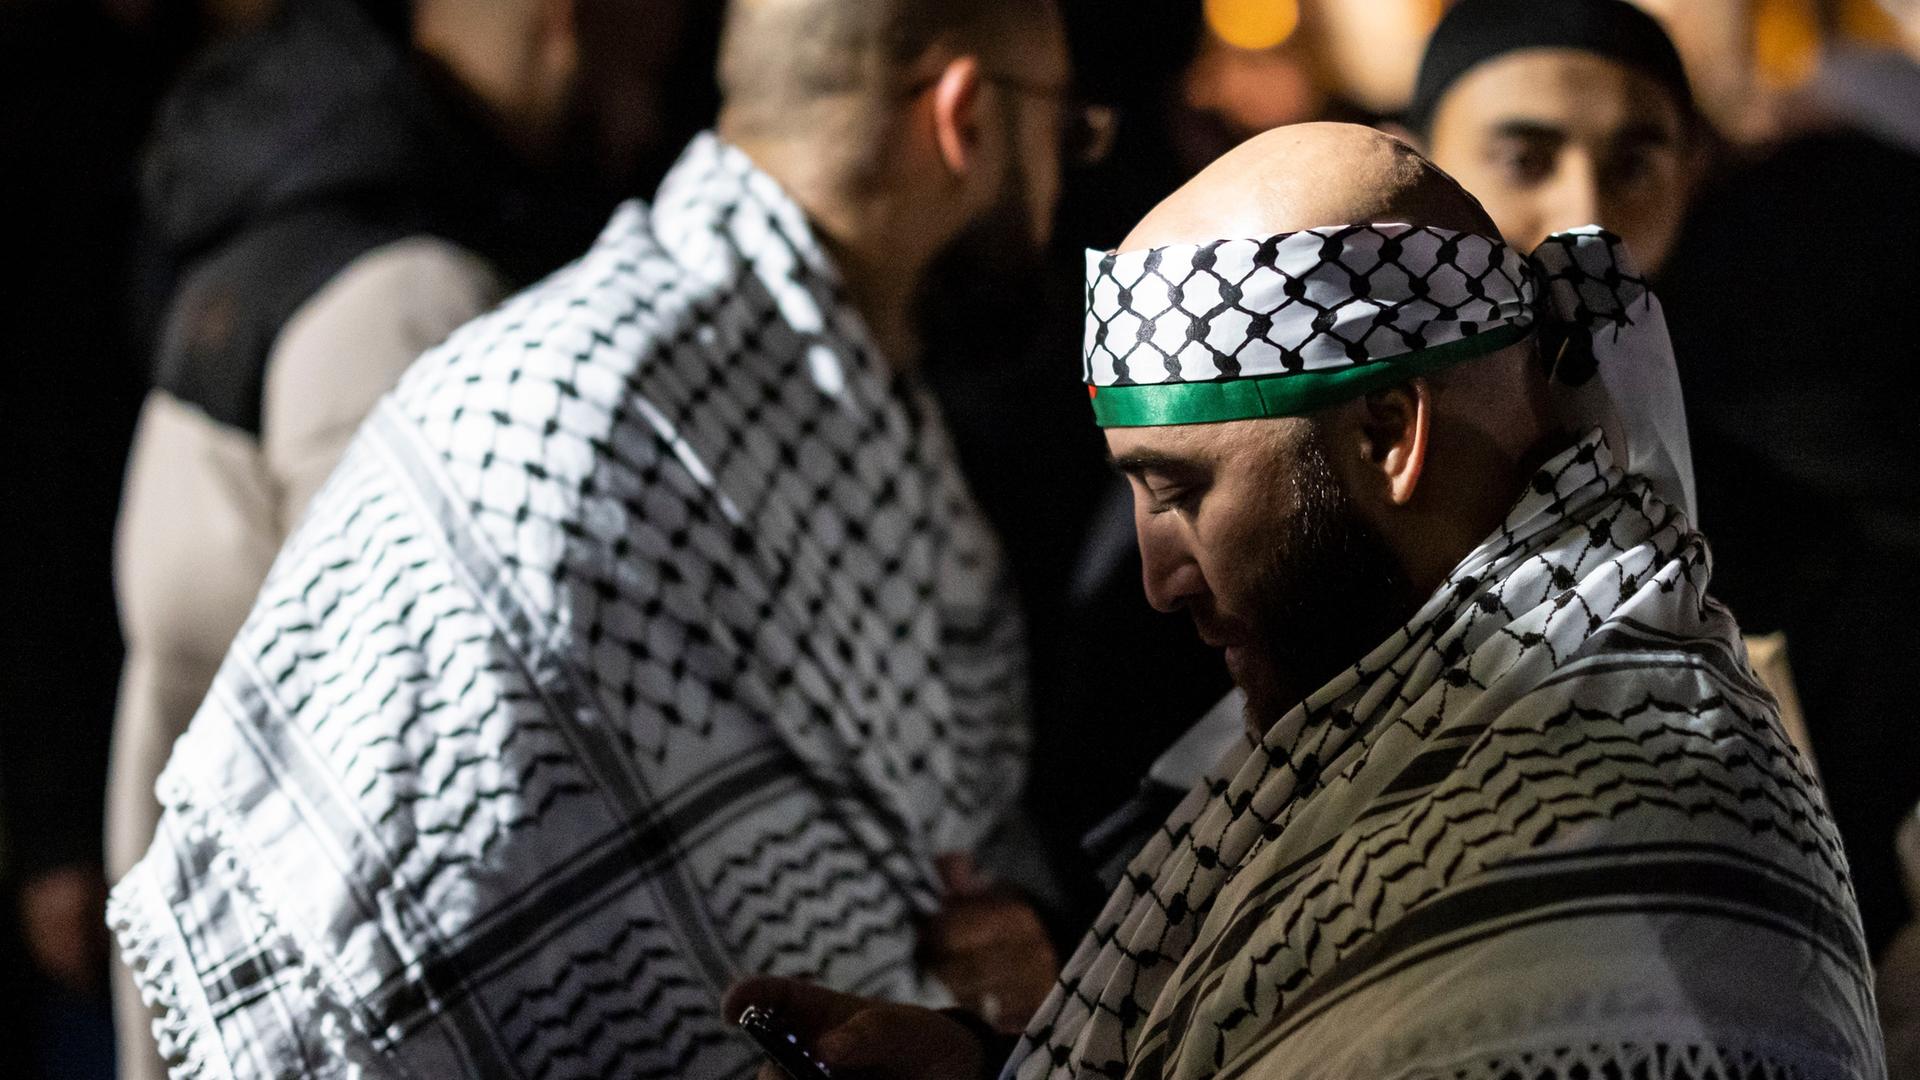 Im Zentrum des Bildes ein Teilnehmer mit palästinensischen Tüchern bei einer Kundgebung, um ihn herum weitere Männer mit palästinensischen Tüchern